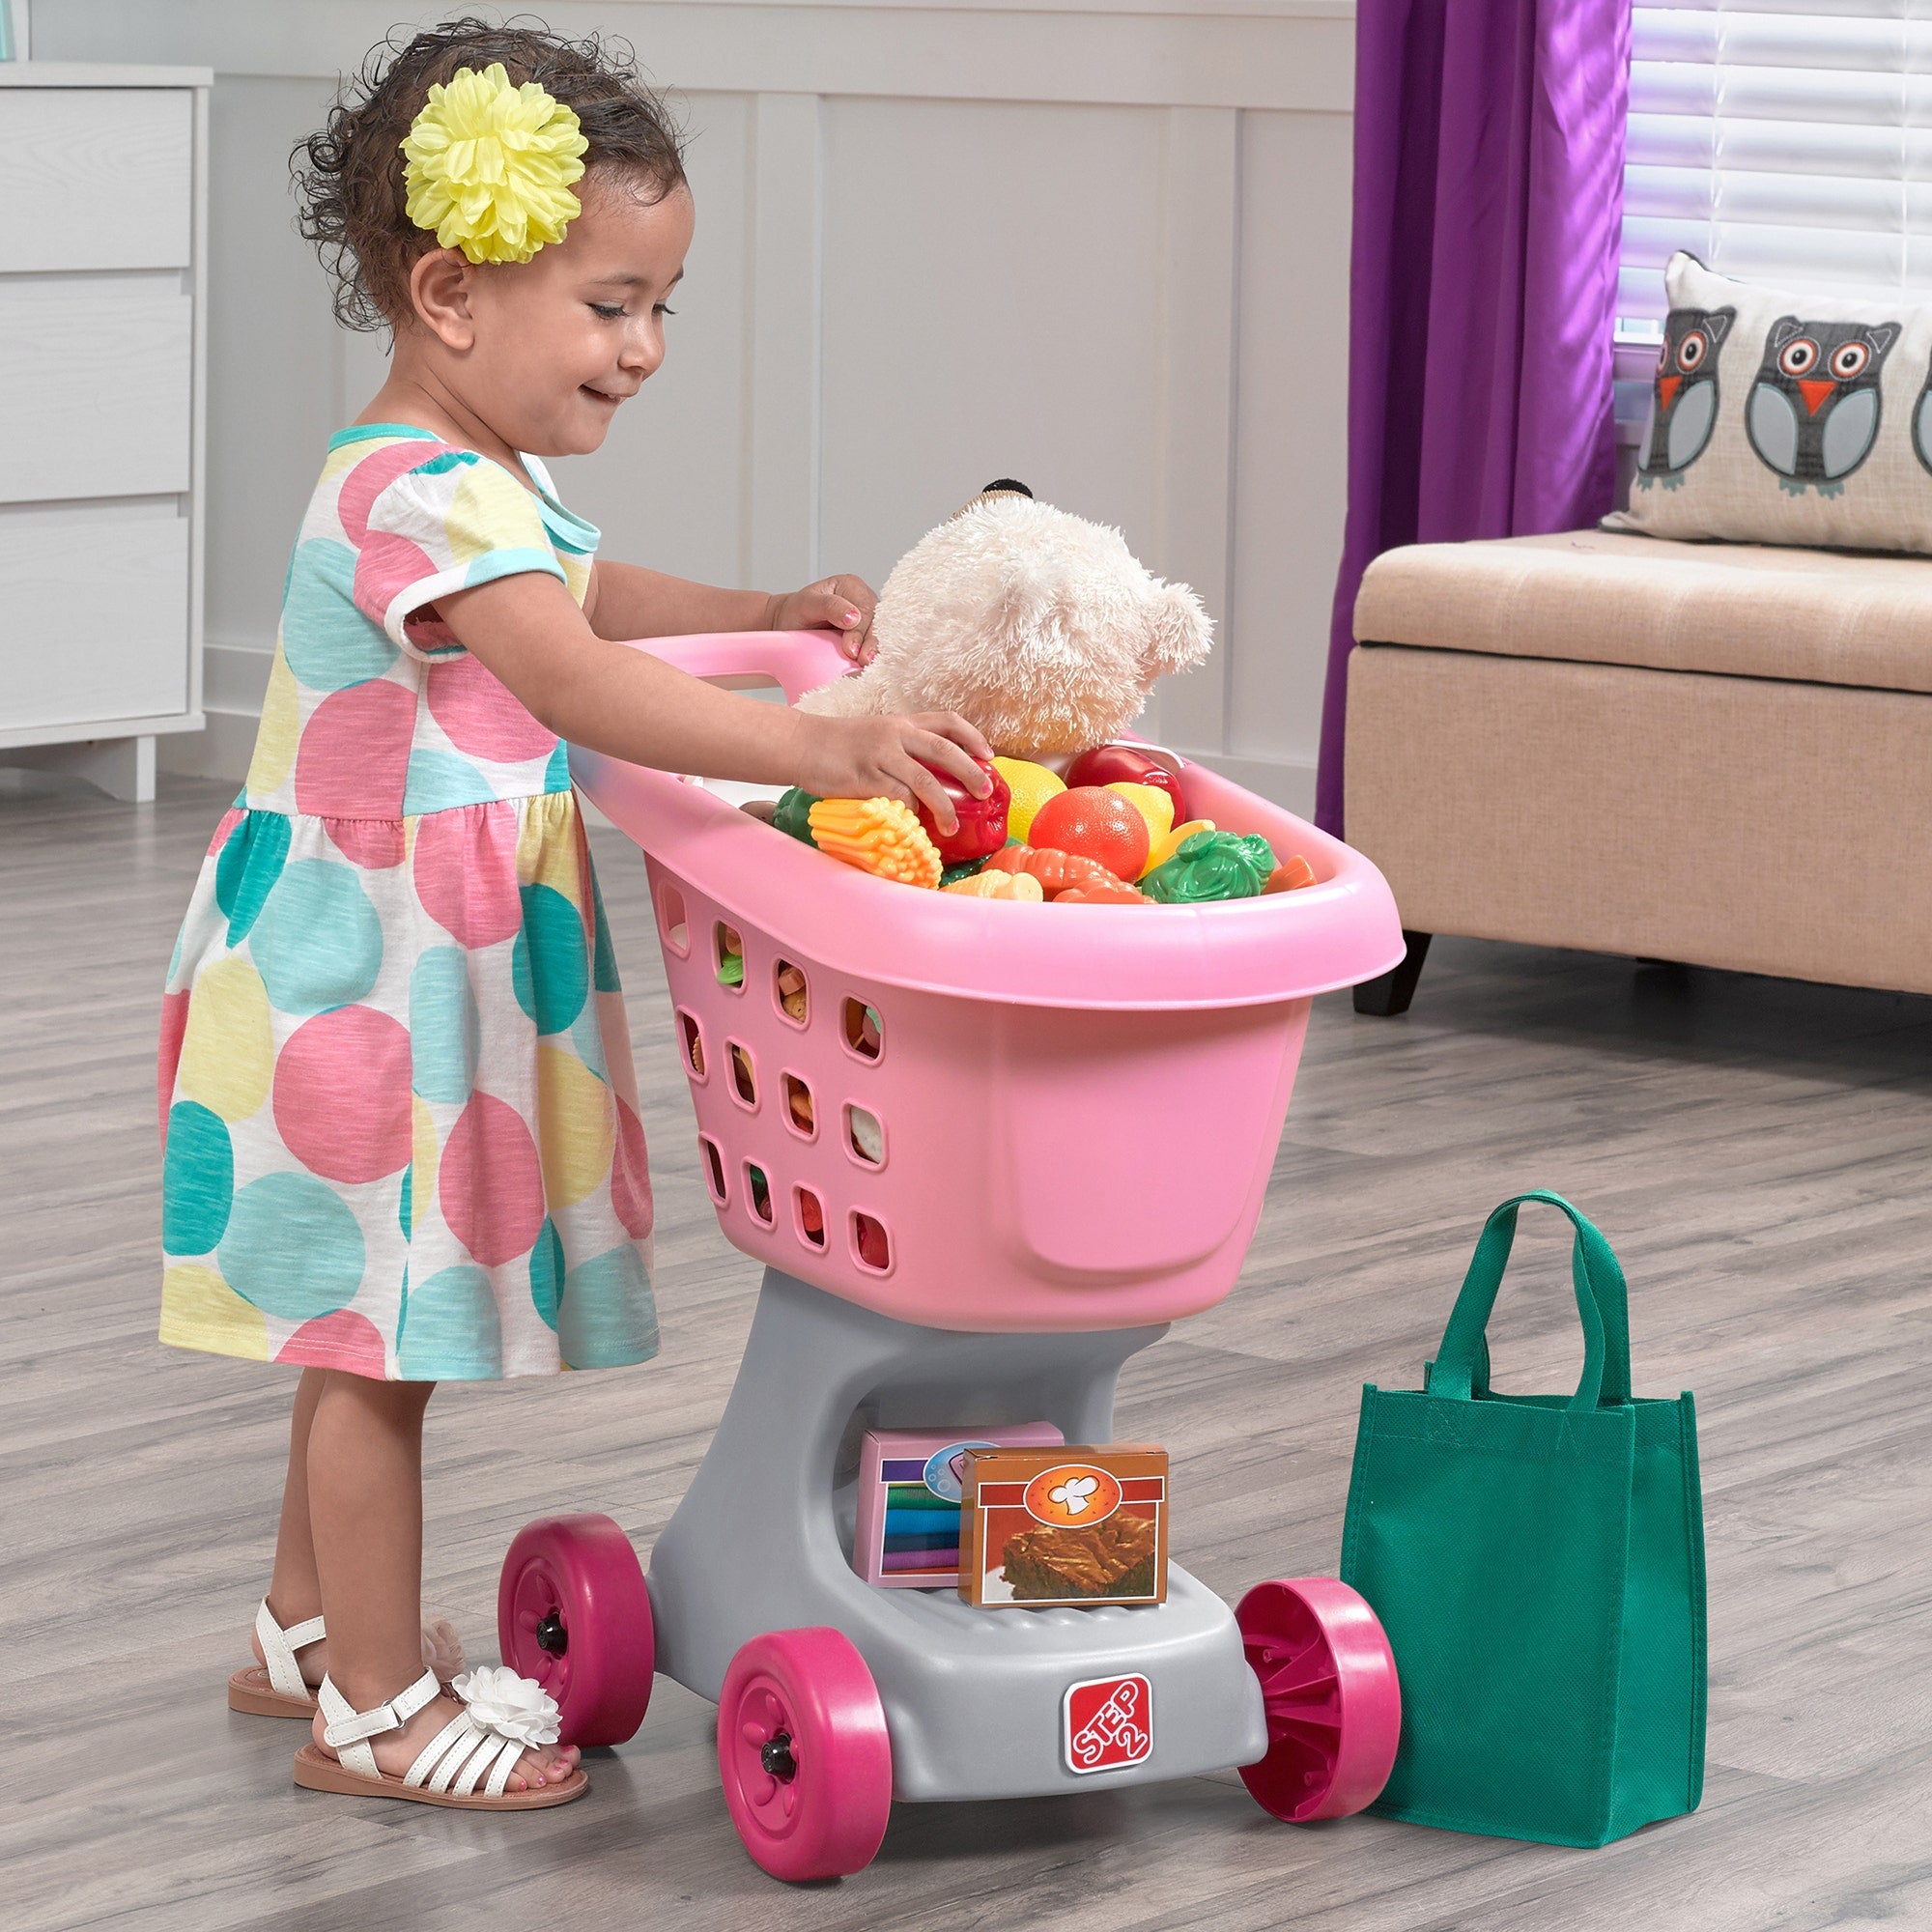 Little Helper’s Cart & Shopping Set™ from Step2